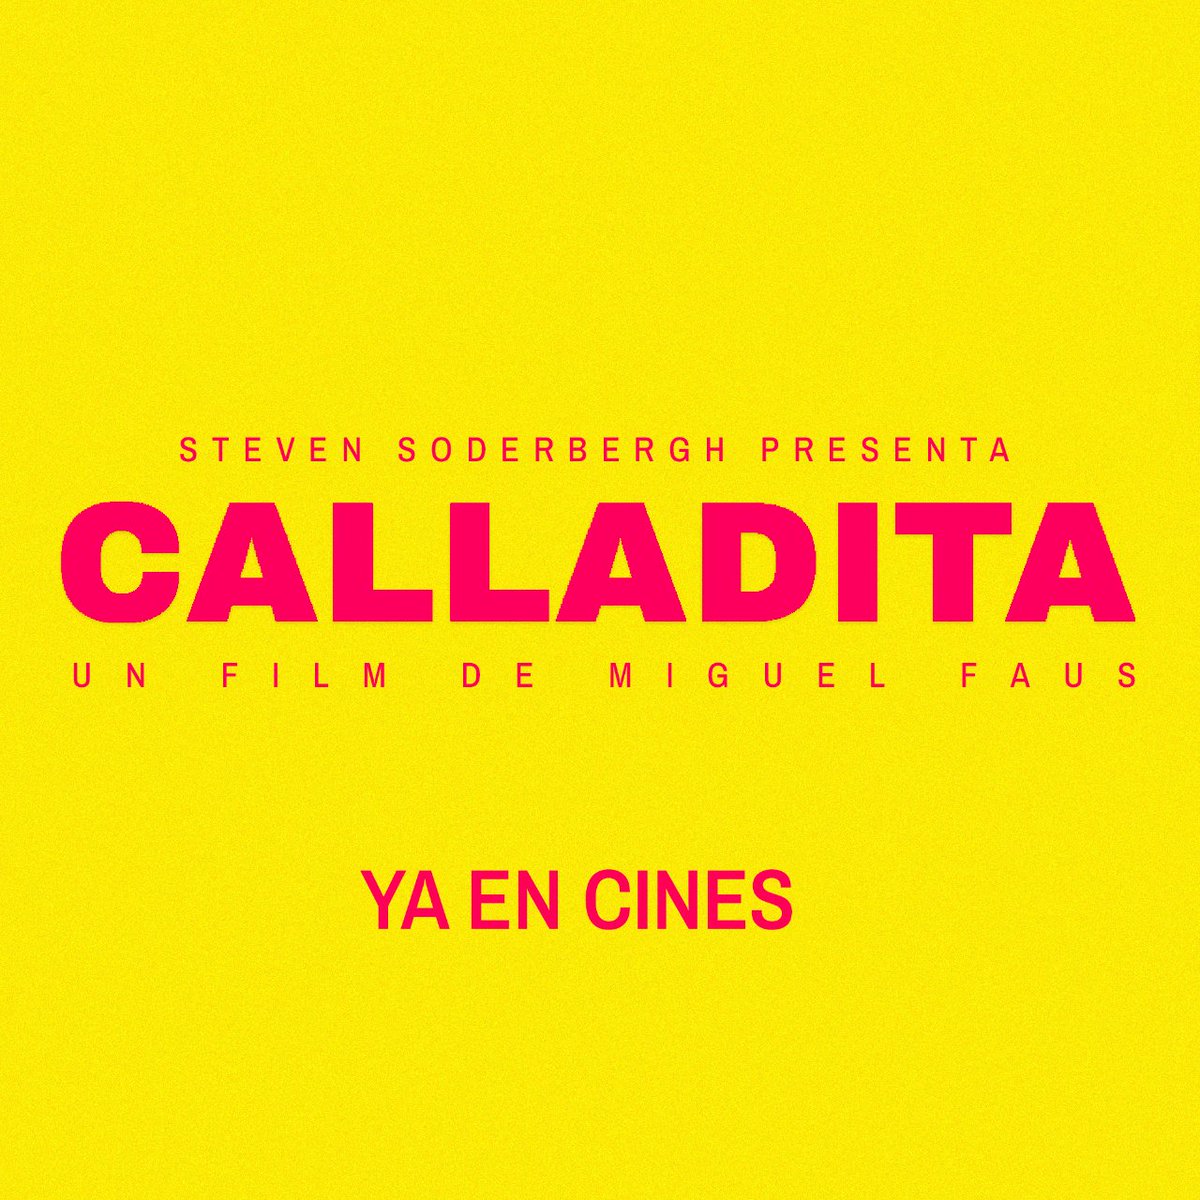 La venganza se sirve (en una piscina) fría. 🌊🔪 #CalladitaFilm ya está en cines seleccionados de toda España. ¡No te la pierdas! 🔎 Consulta cines y horarios en nuestra web (link en bio)  #Calladita #CalladitaFilm #CalladitaLaPelícula